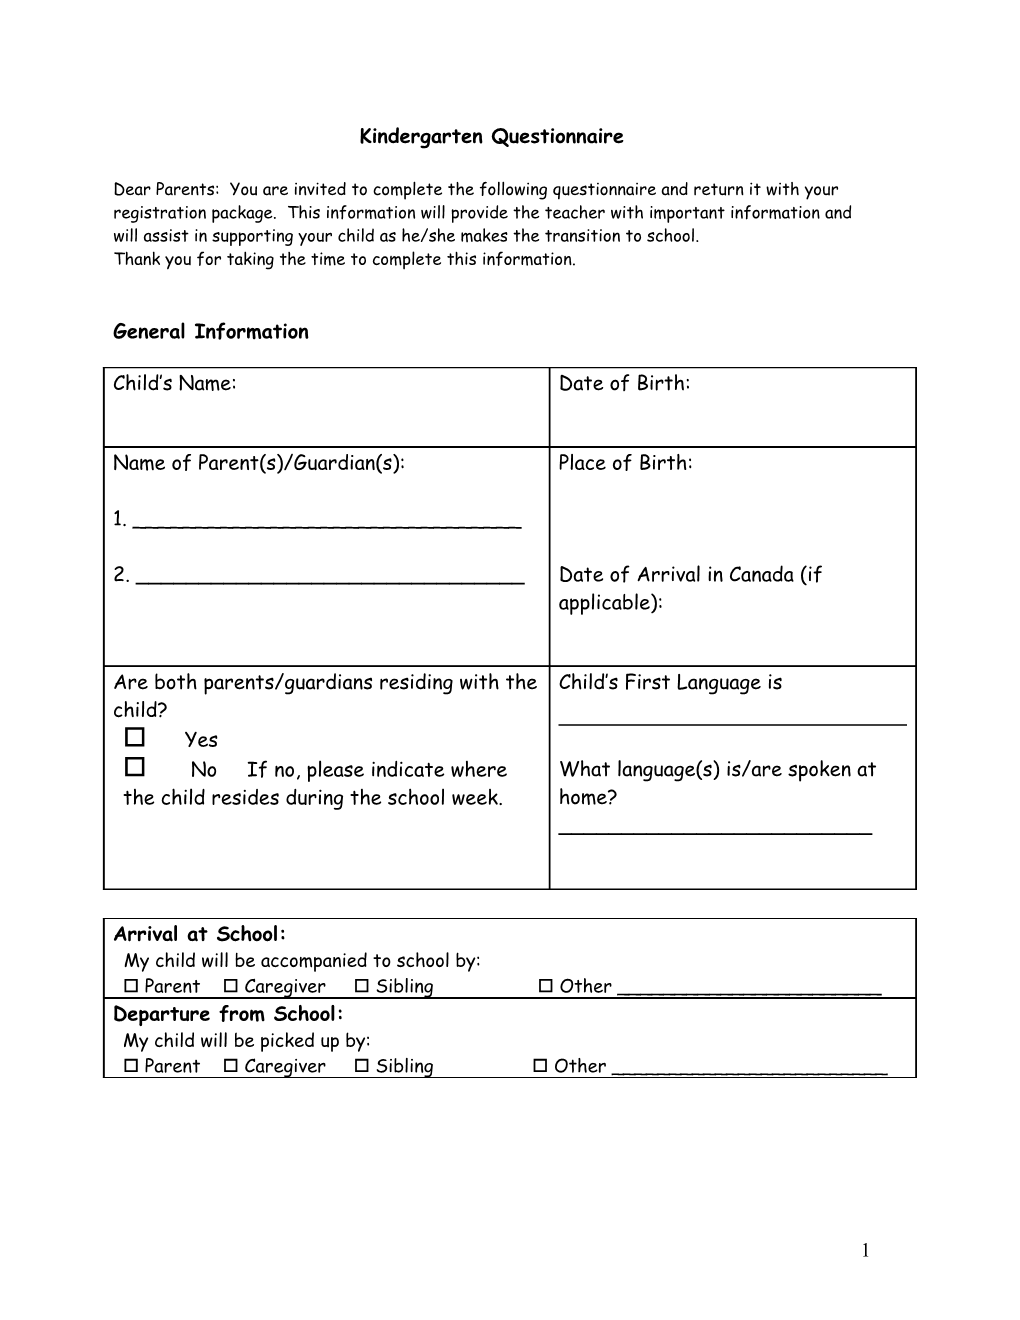 Kindergarten Parent Questionnaire